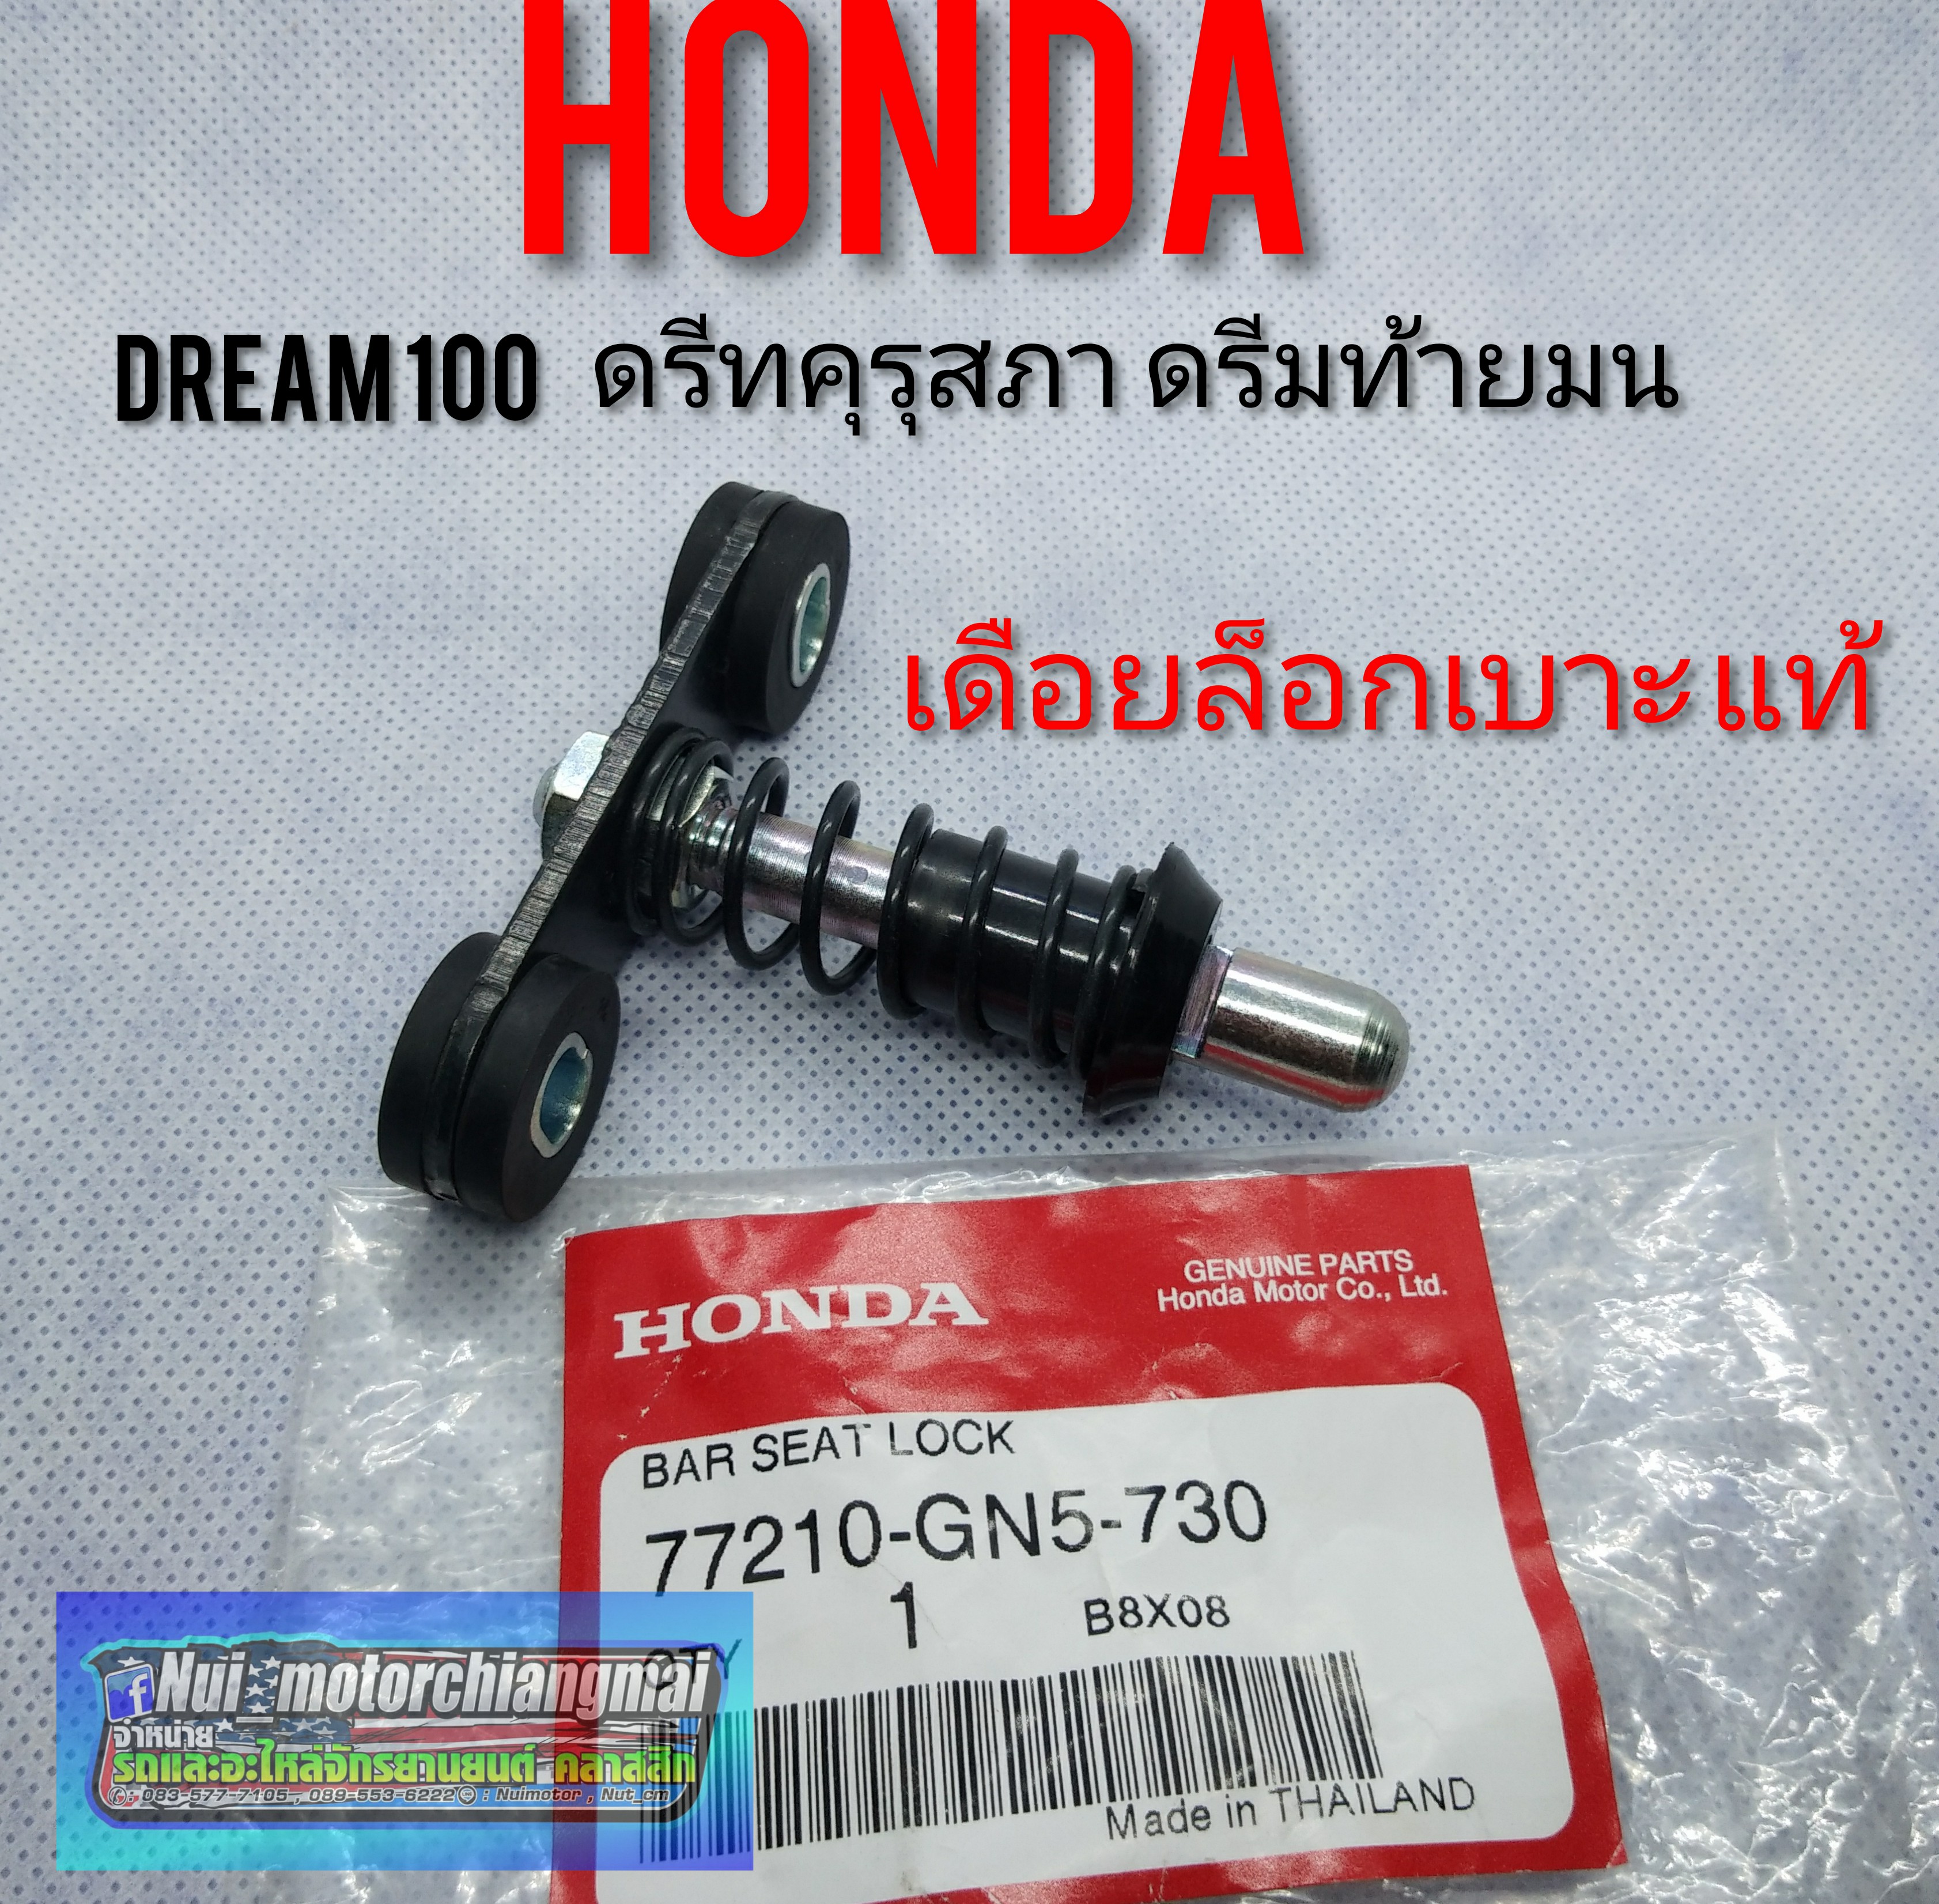 เดือยล็อกเบาะแท้/เทียม Honda dream100 ดรีมคุรุสภา ดรีมท้ายมน ดรีมเก่า ดรีมท้ายเป็ด ดรีมc100 n